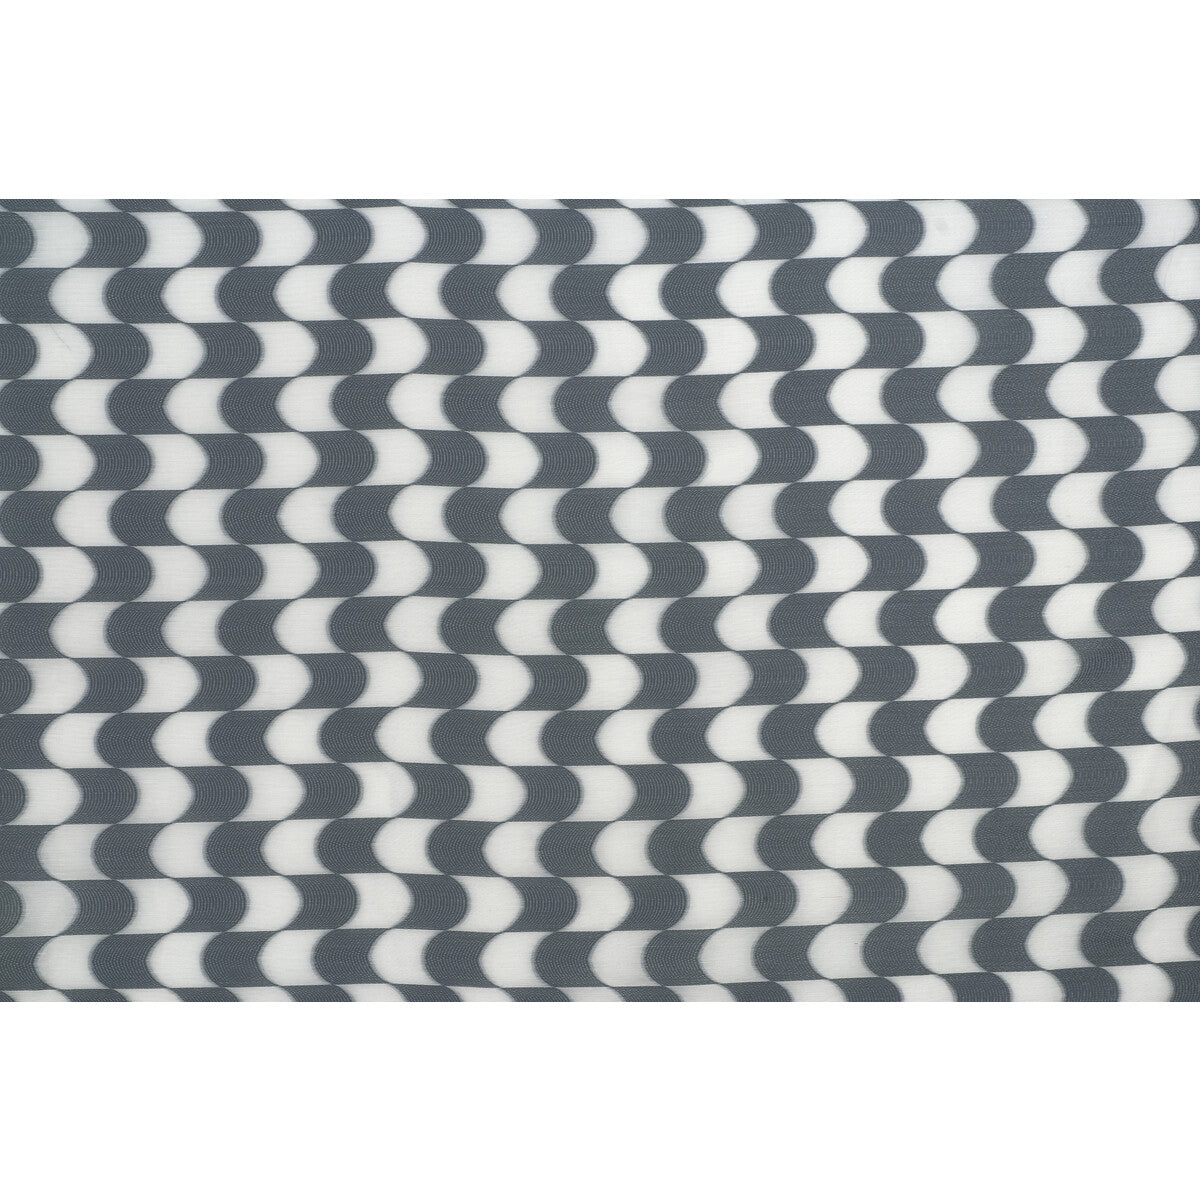 Kravet Basics fabric in 4304-11 color - pattern 4304.11.0 - by Kravet Basics